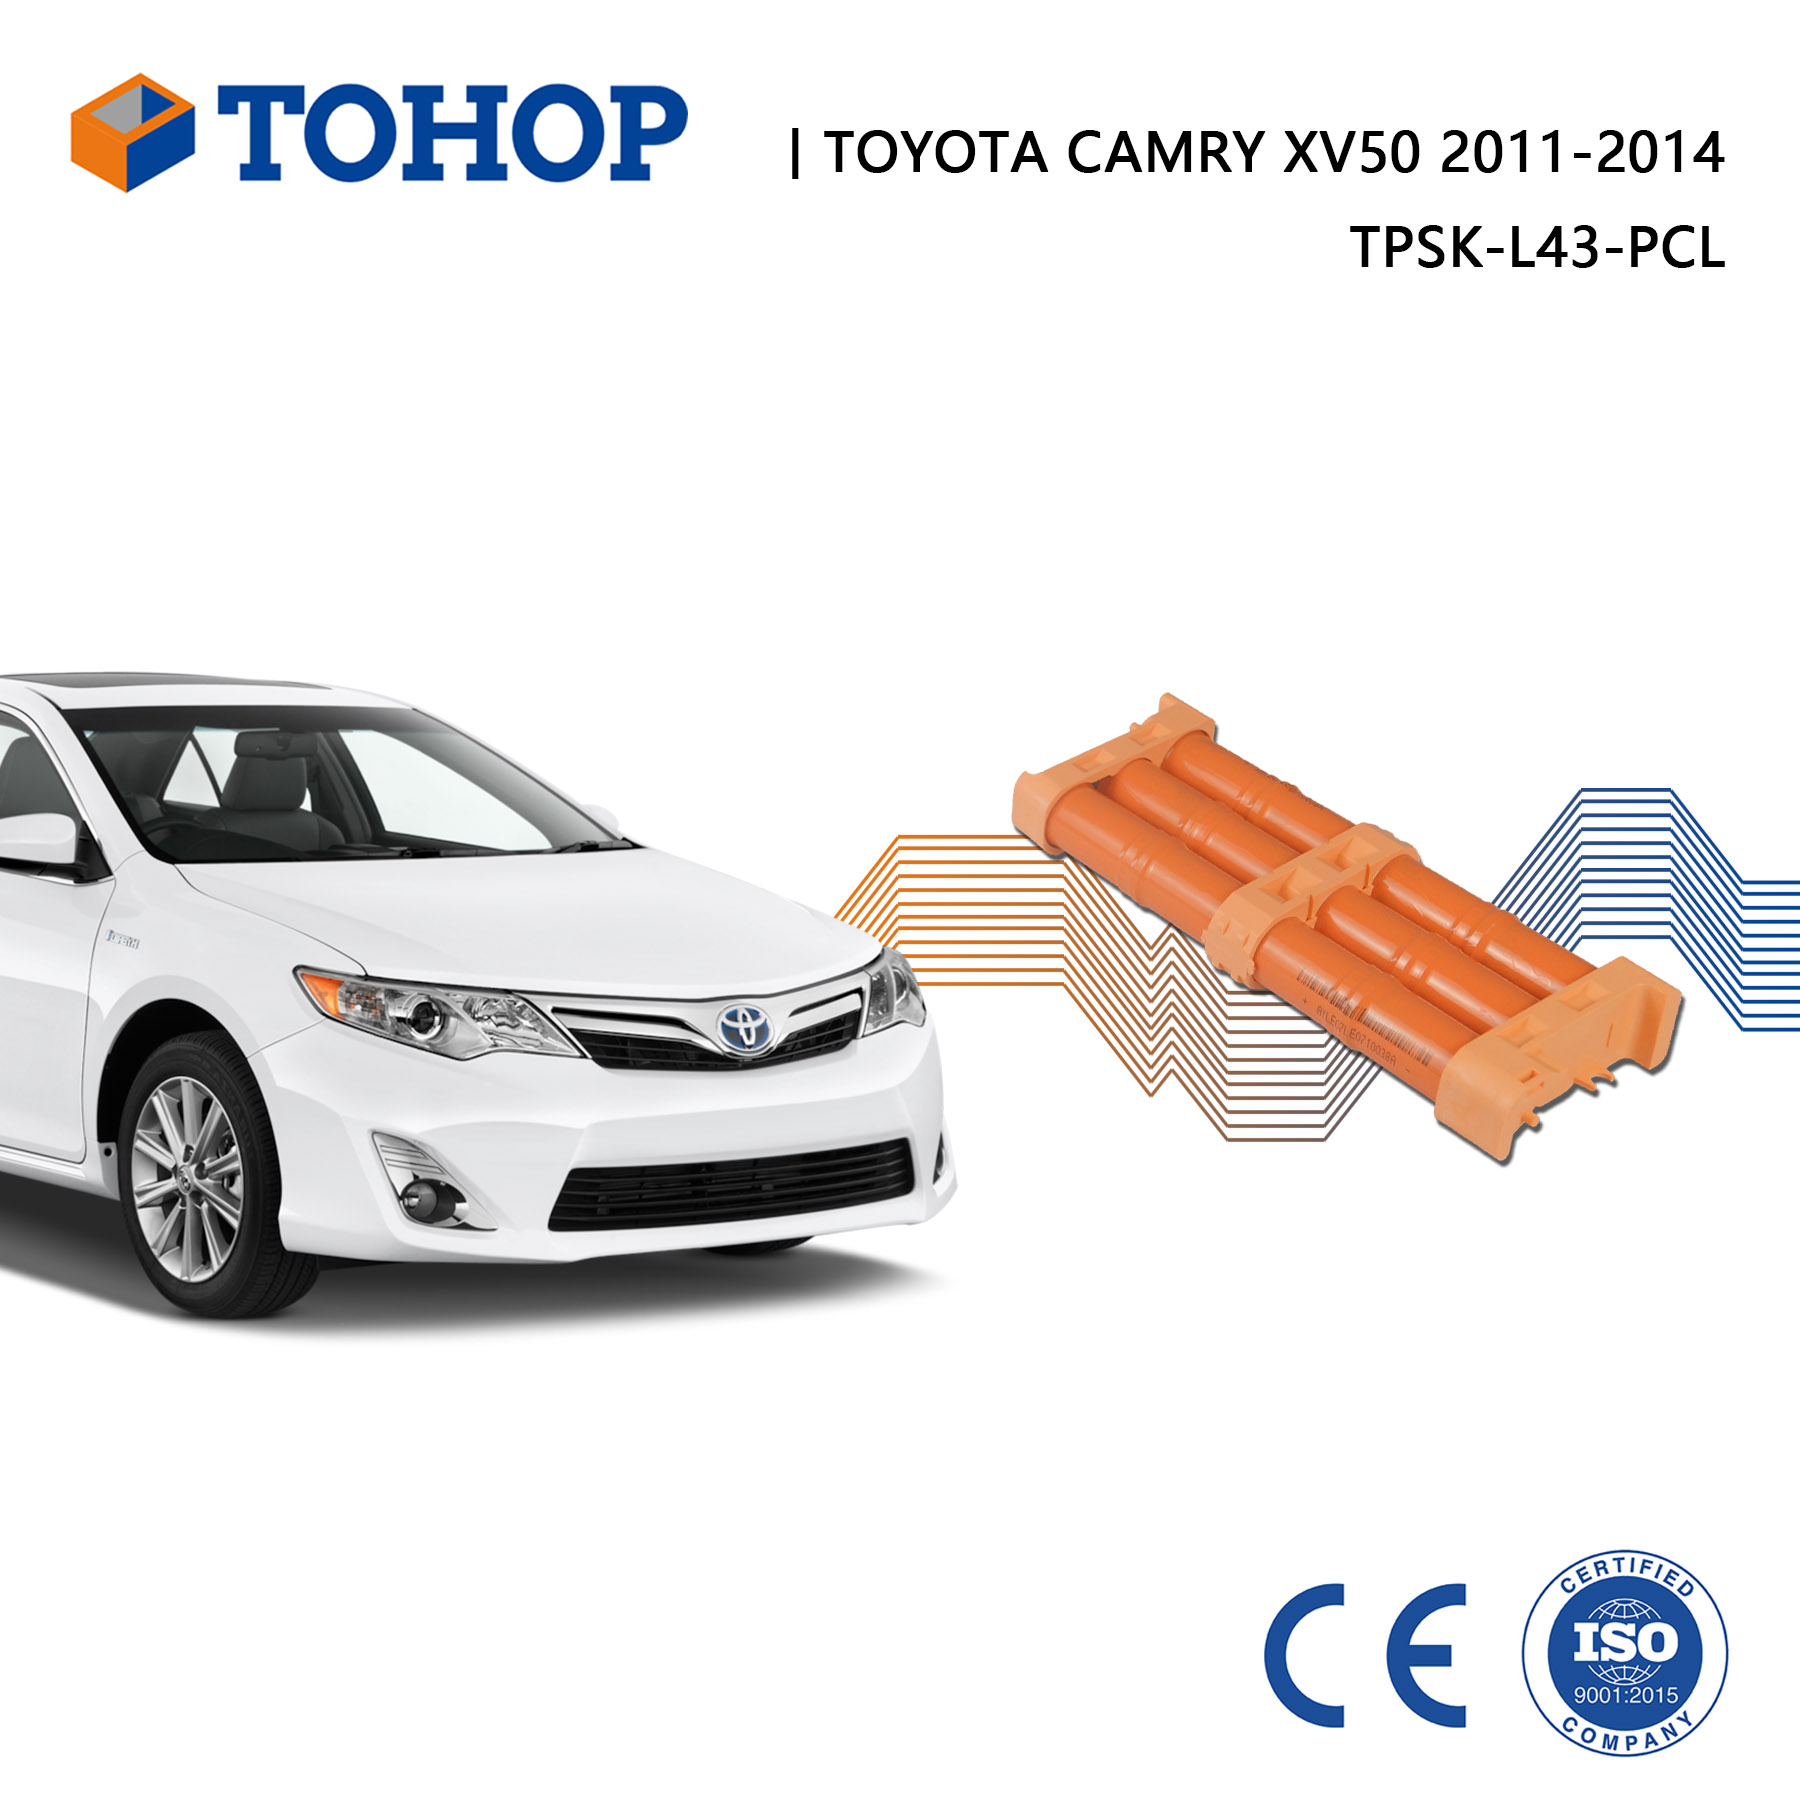 Batterie hybride Toyota Camry XV50 14.4V 6.5Ah Cellule de batterie de remplacement